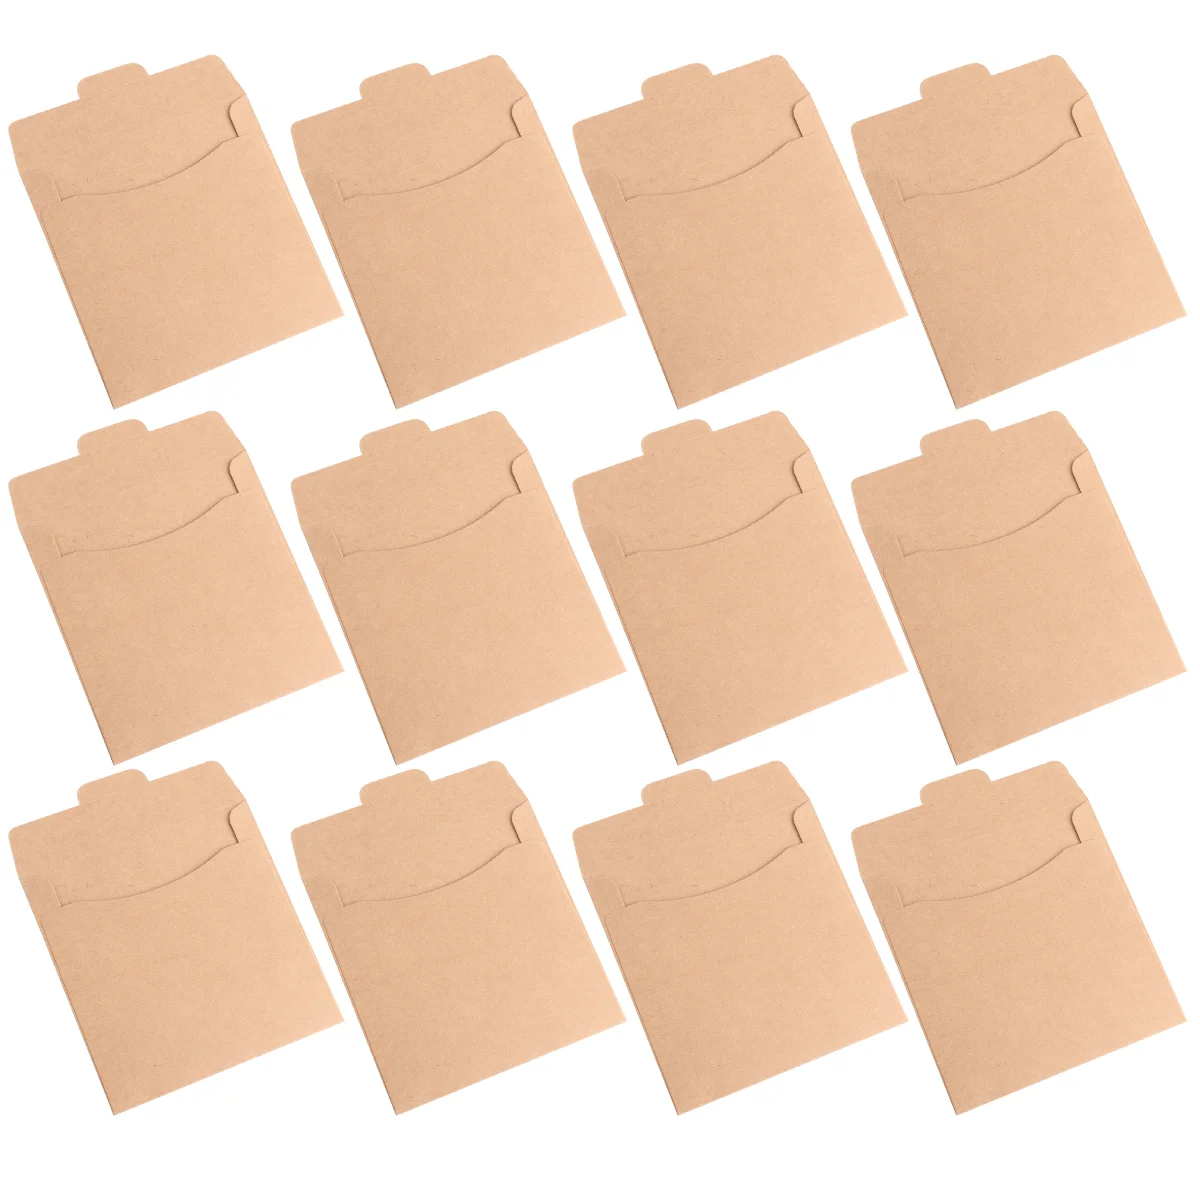 

30pcs Sleeves Envelopes Kraft Paper Cardboard Envelopes Paper Storage Holder Covers